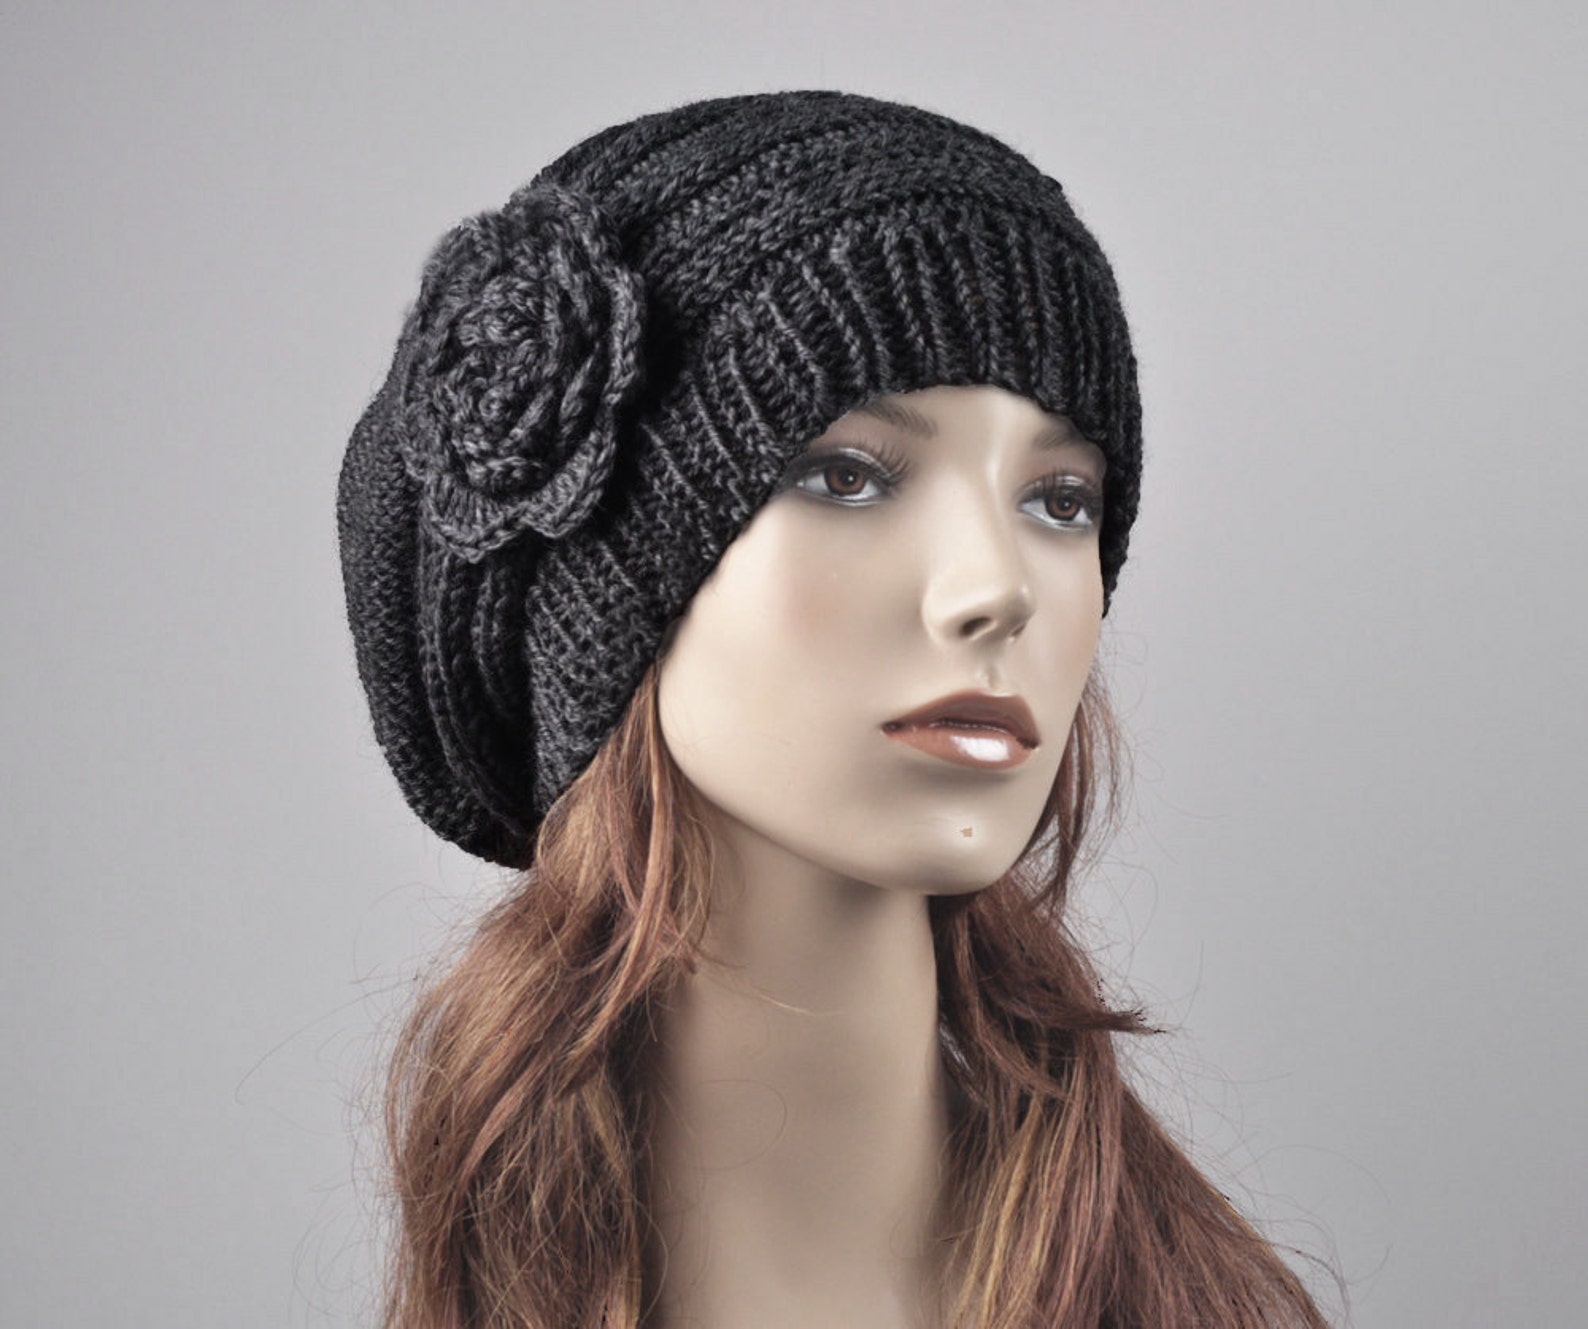 Knit hat. Необычные вязаные шапки для женщин. Необычные вязаные шапки в мире моды. Оригинальная вязаная шапка для взрослой женщины. Шапки женские зимние шерсть Италия.